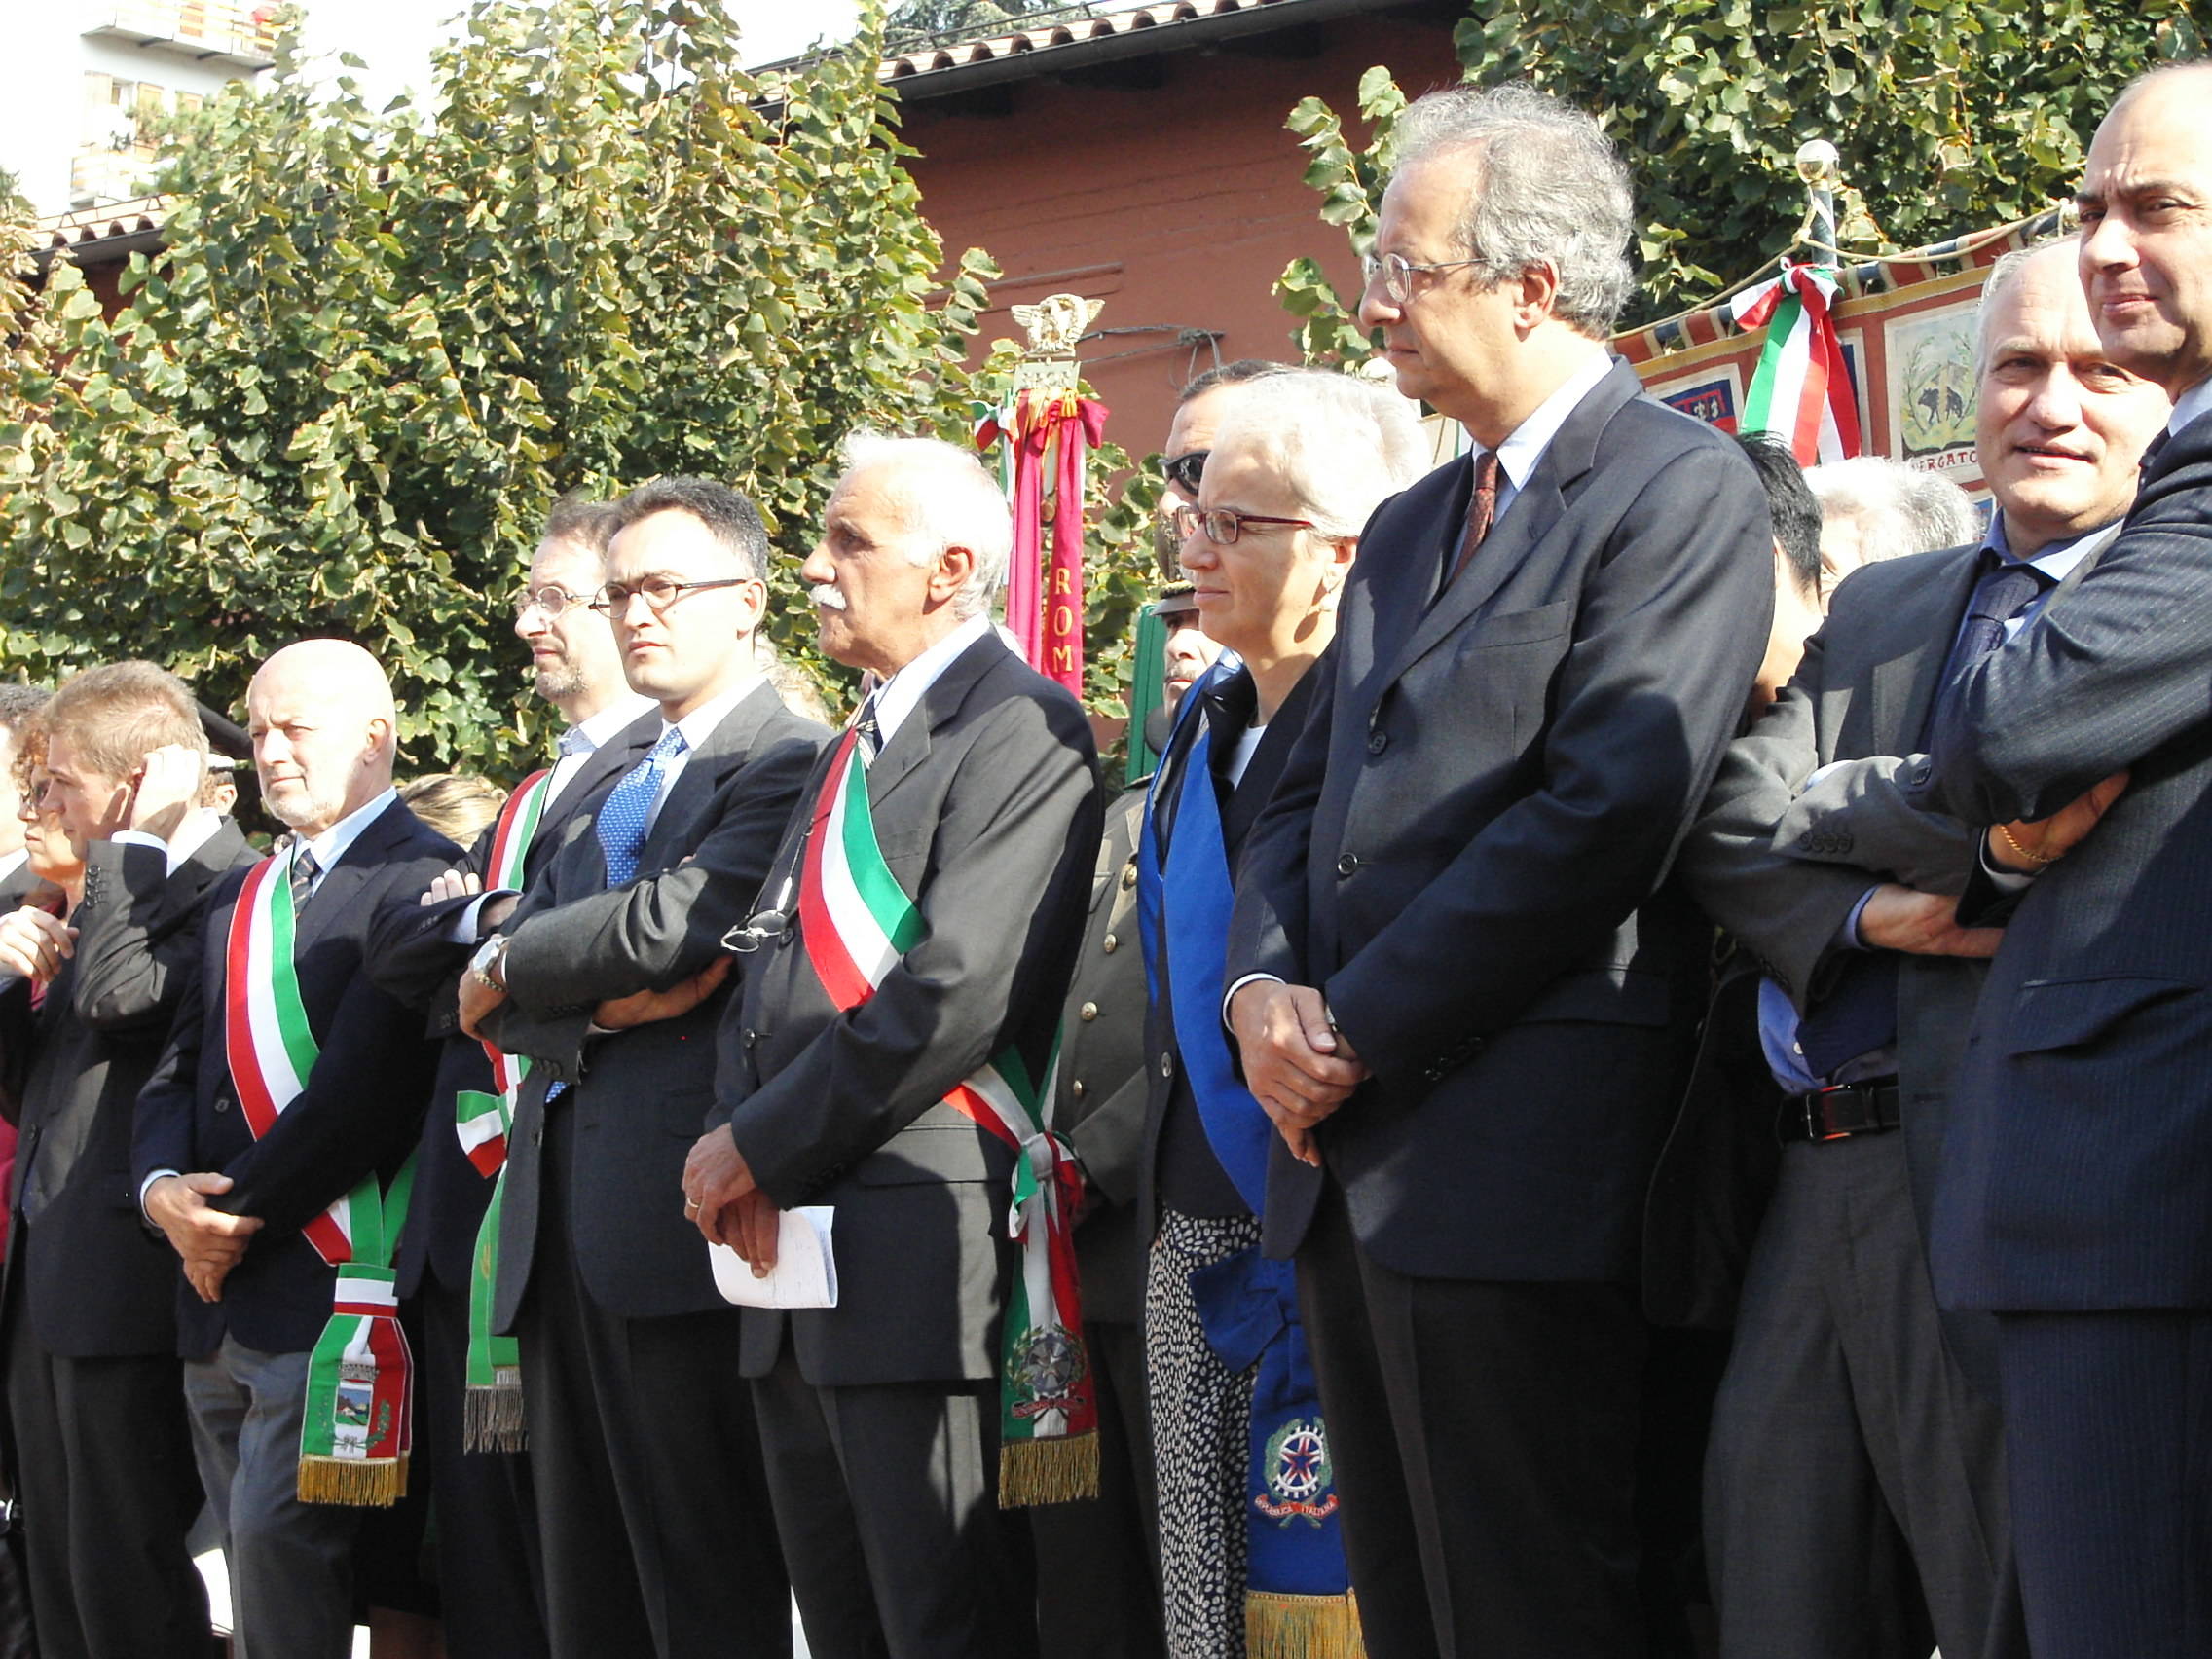 Marzabotto 1 ottobre 2006: Sul palco, al centro il sindaco di Marzabotto Edoardo Masetti. E' presente anche il sindaco di Roma Walter Veltroni.